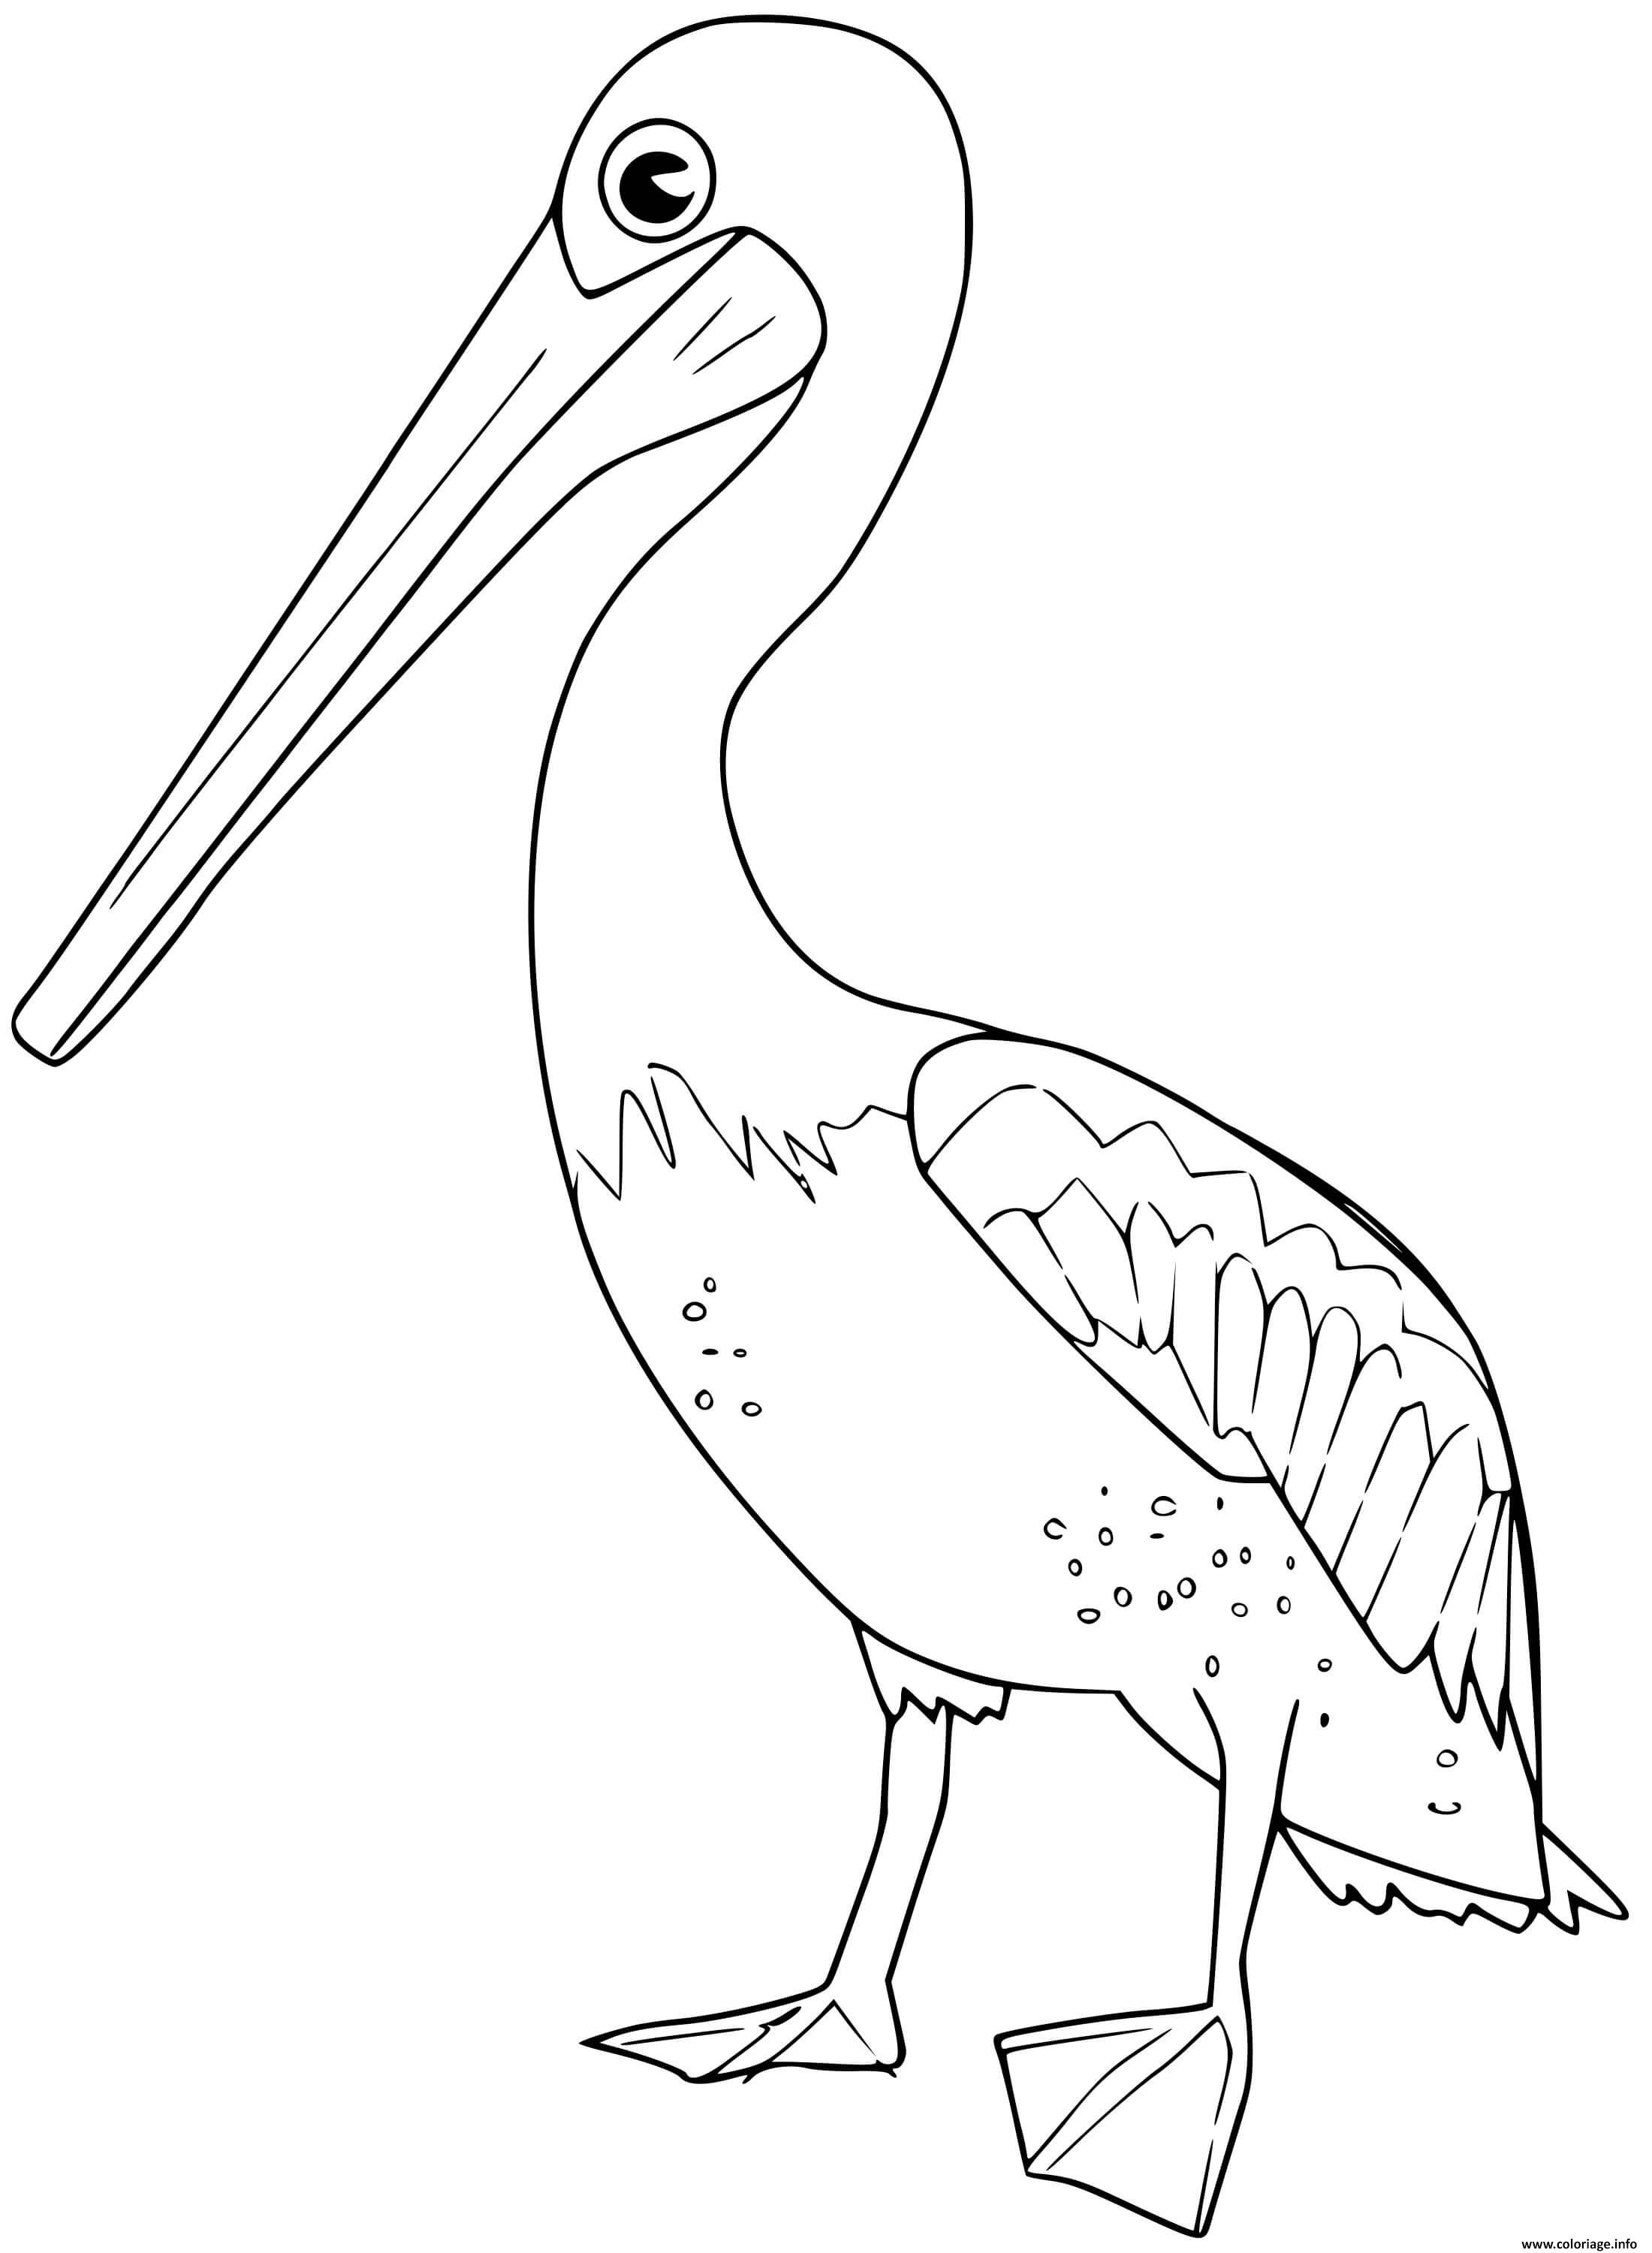 Dessin pelican Coloriage Gratuit à Imprimer